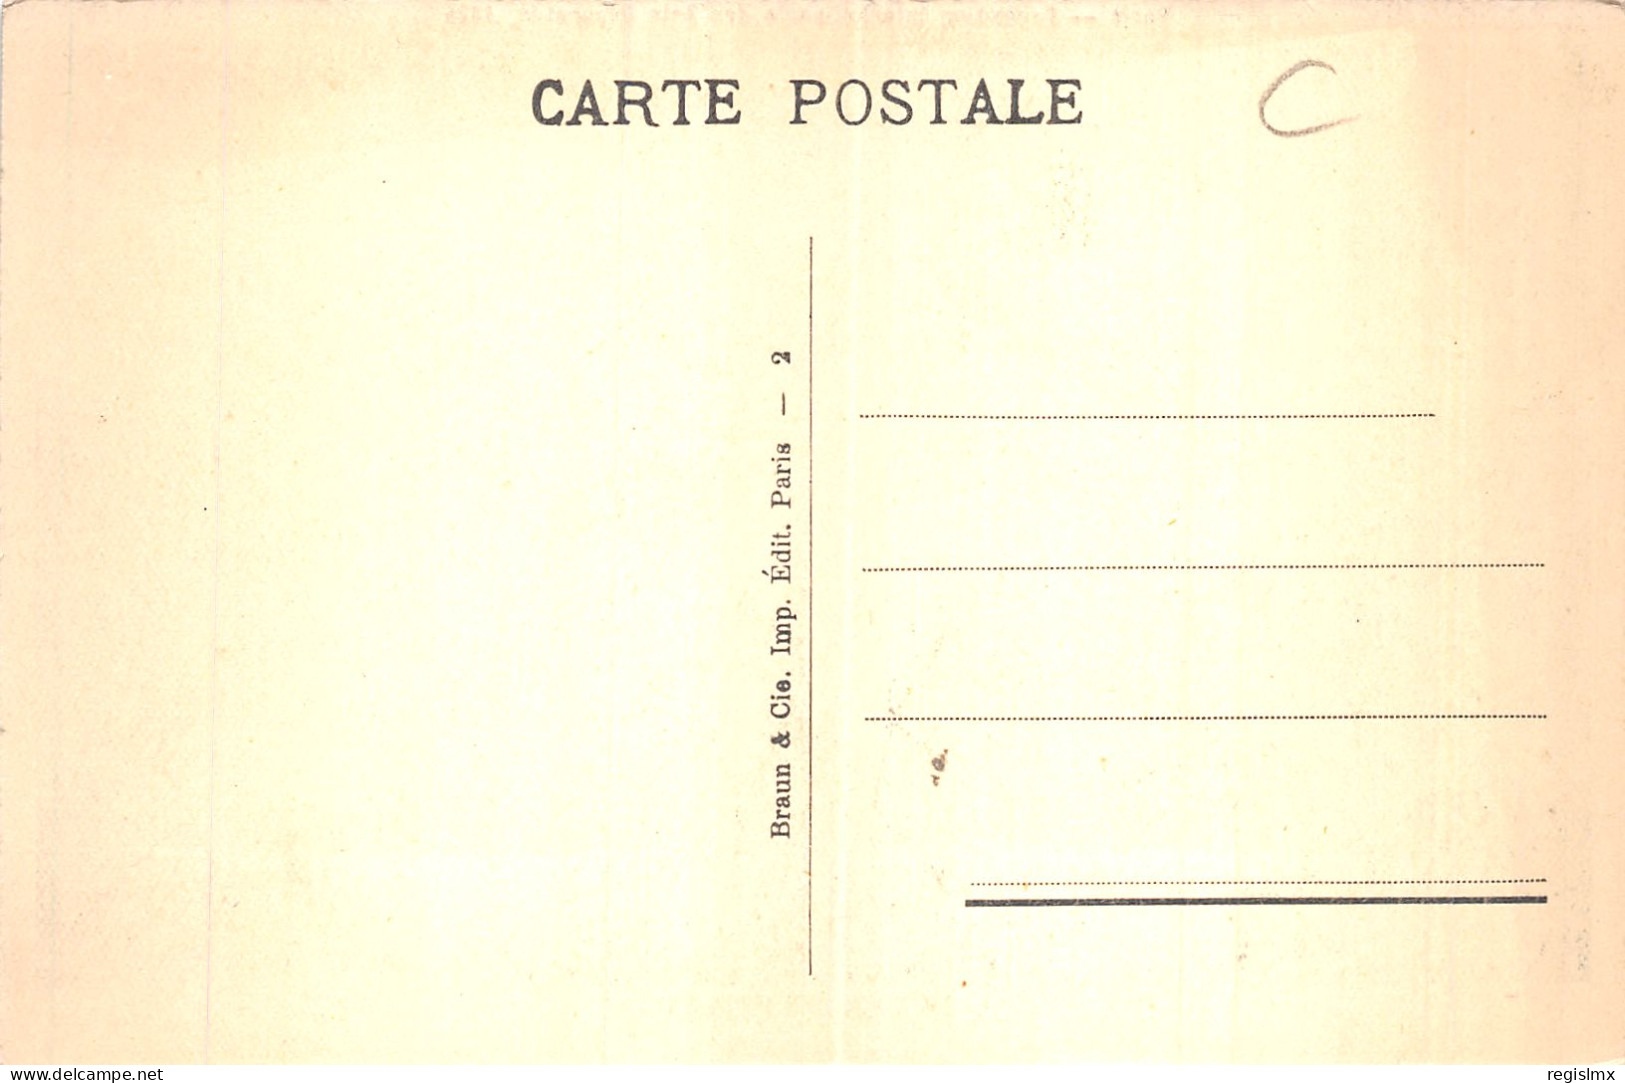 75-PARIS EXPOSITION INTERNATIONALE DES ARTS DECORATIFS 1925-N°T1041-H/0101 - Mostre